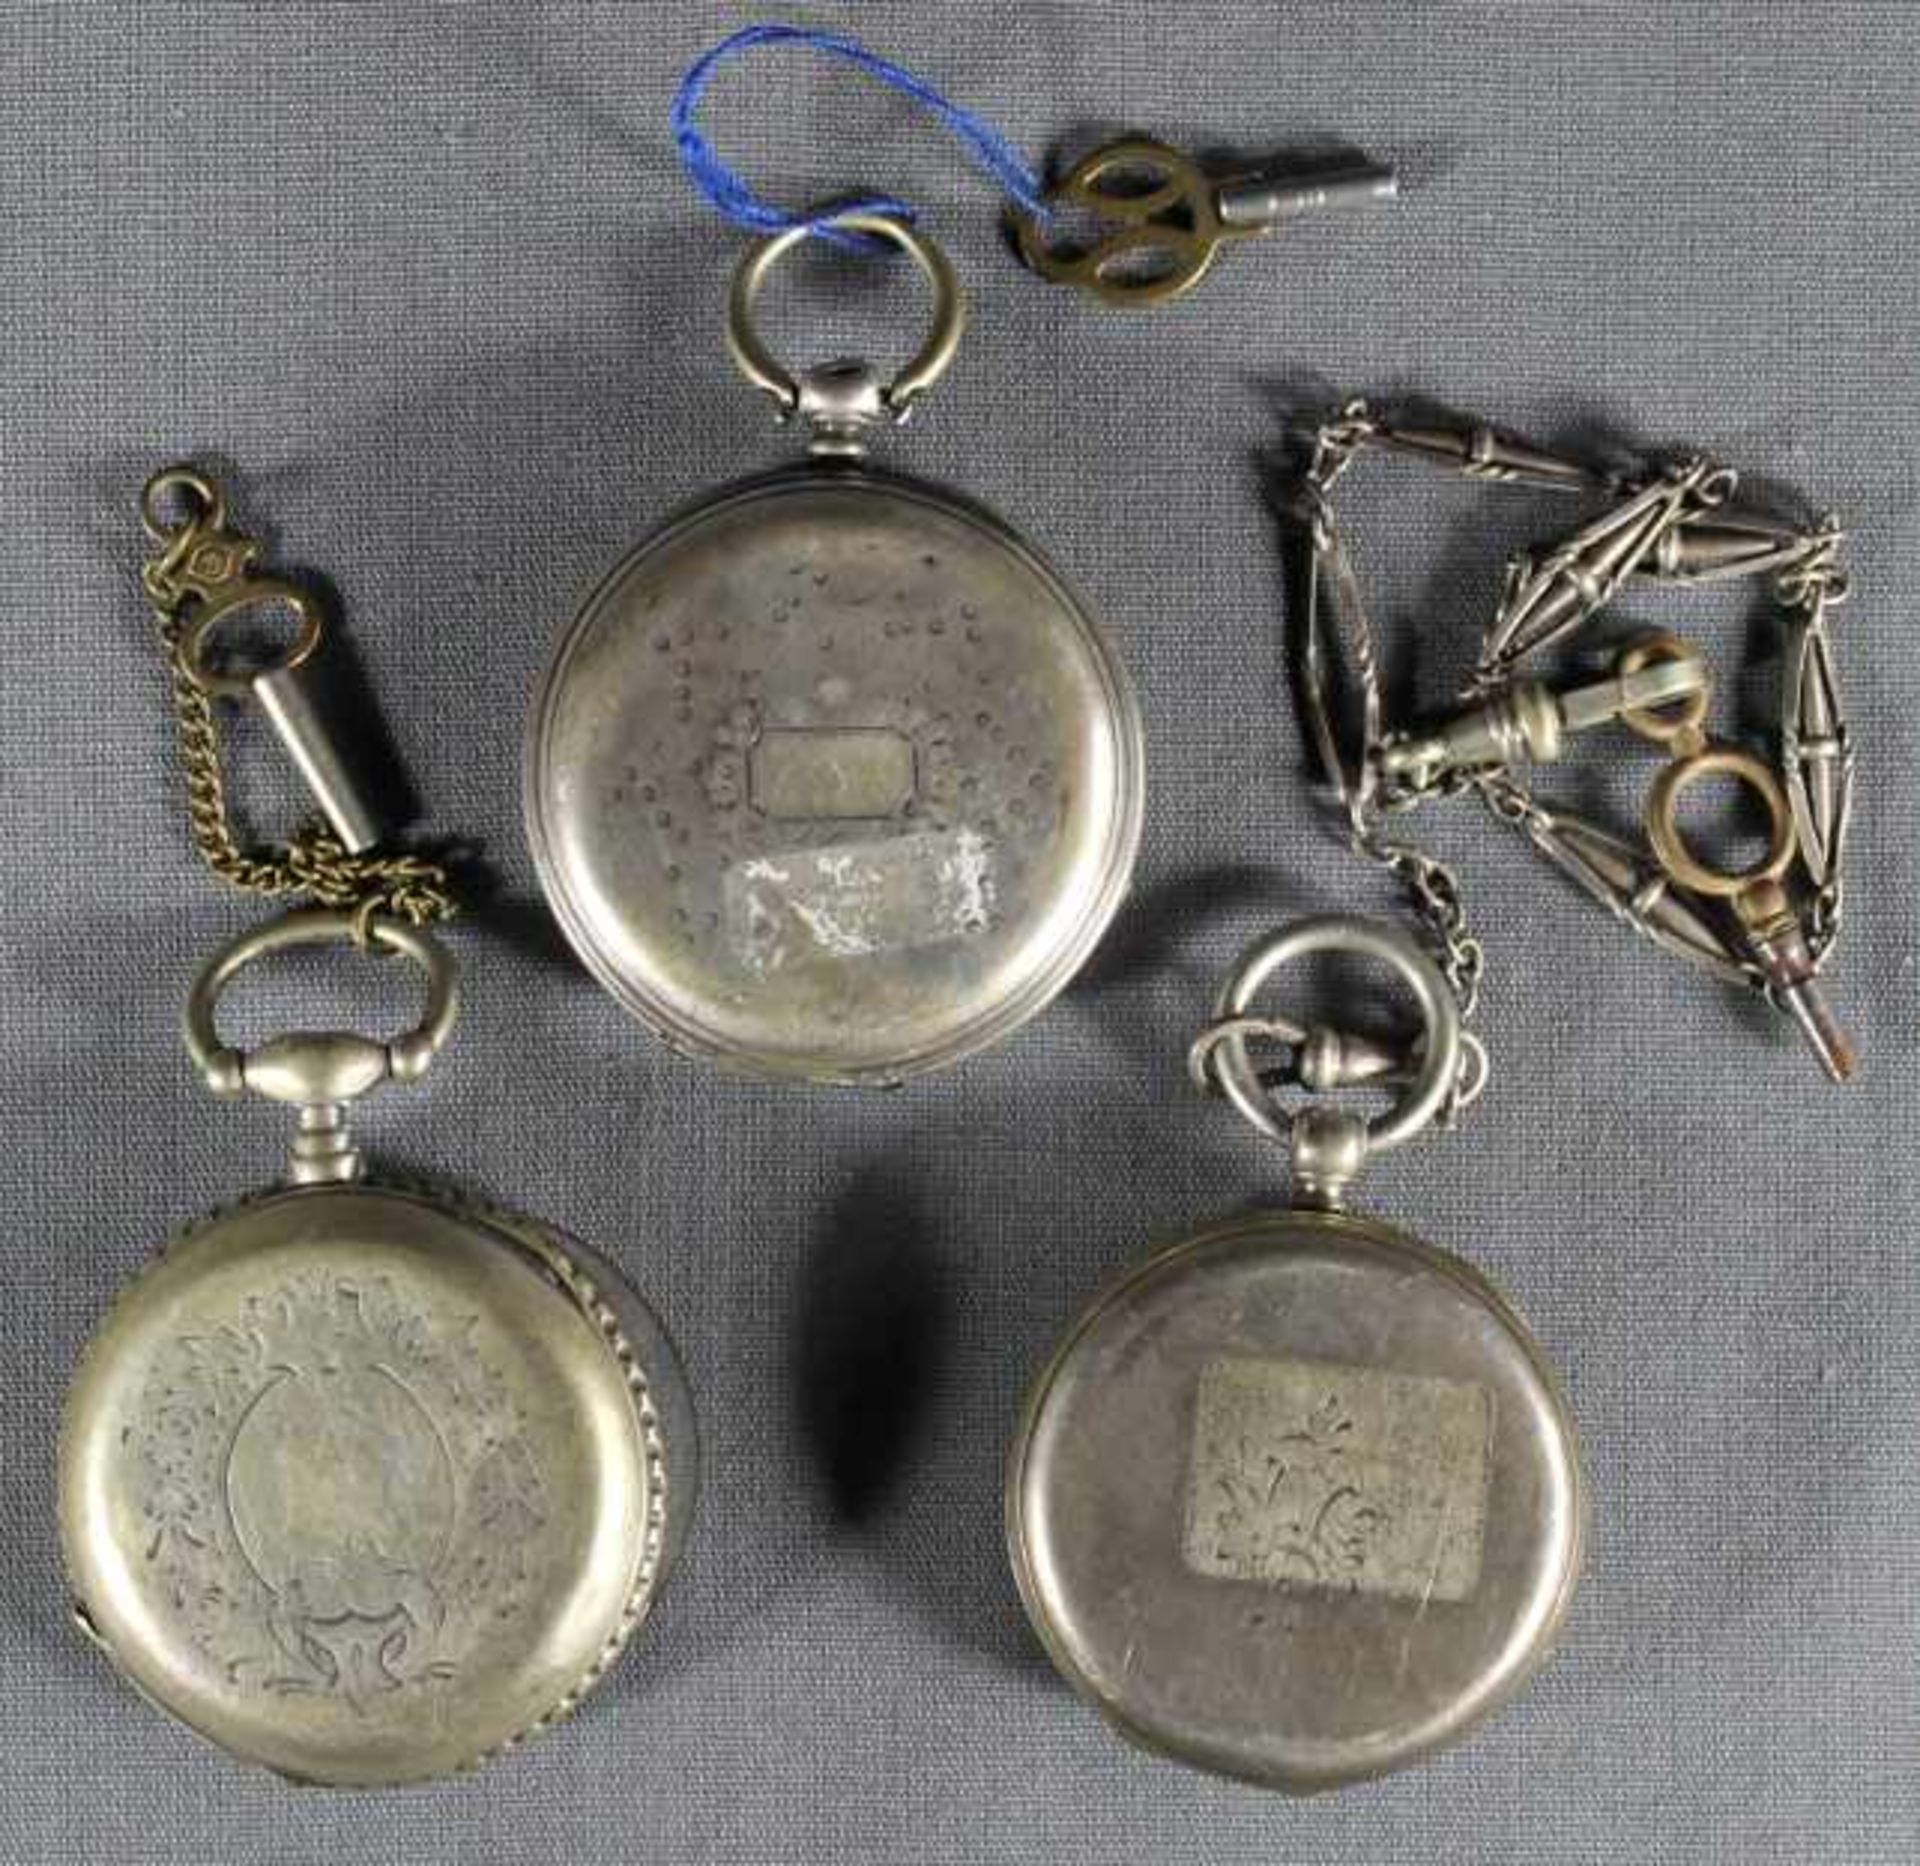 3 Taschenuhren Silber, verzierte Gehäuse u.a. Charmilles Genève, weiße Zifferblätter mit schwarzen - Image 2 of 3